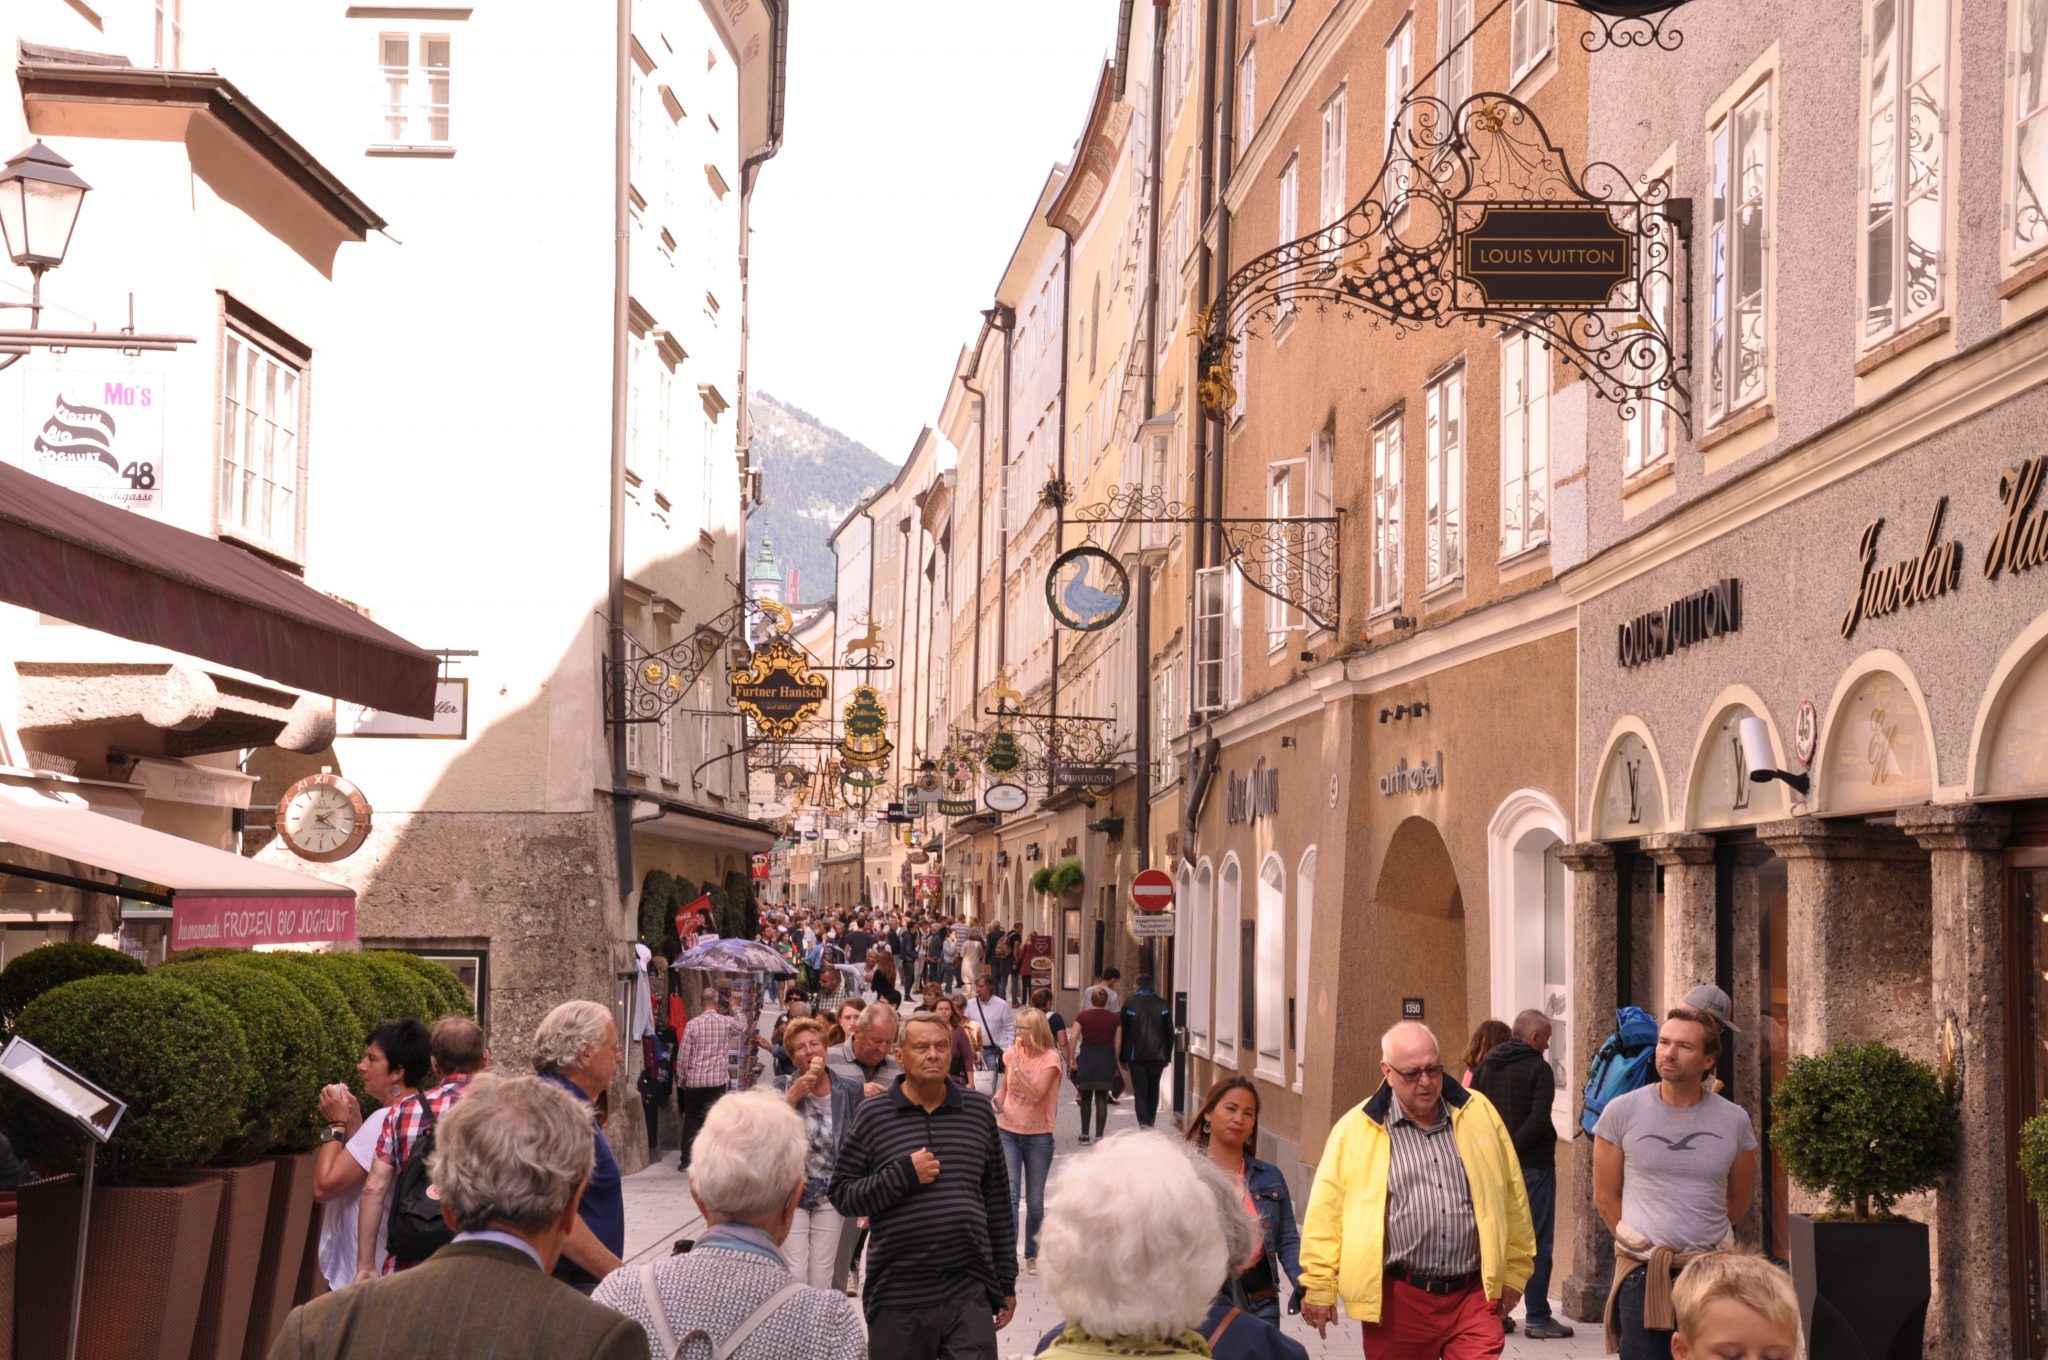 Quer durch alle Schichten: 2 von 3 Menschen in Österreich wollen mehr Umverteilung